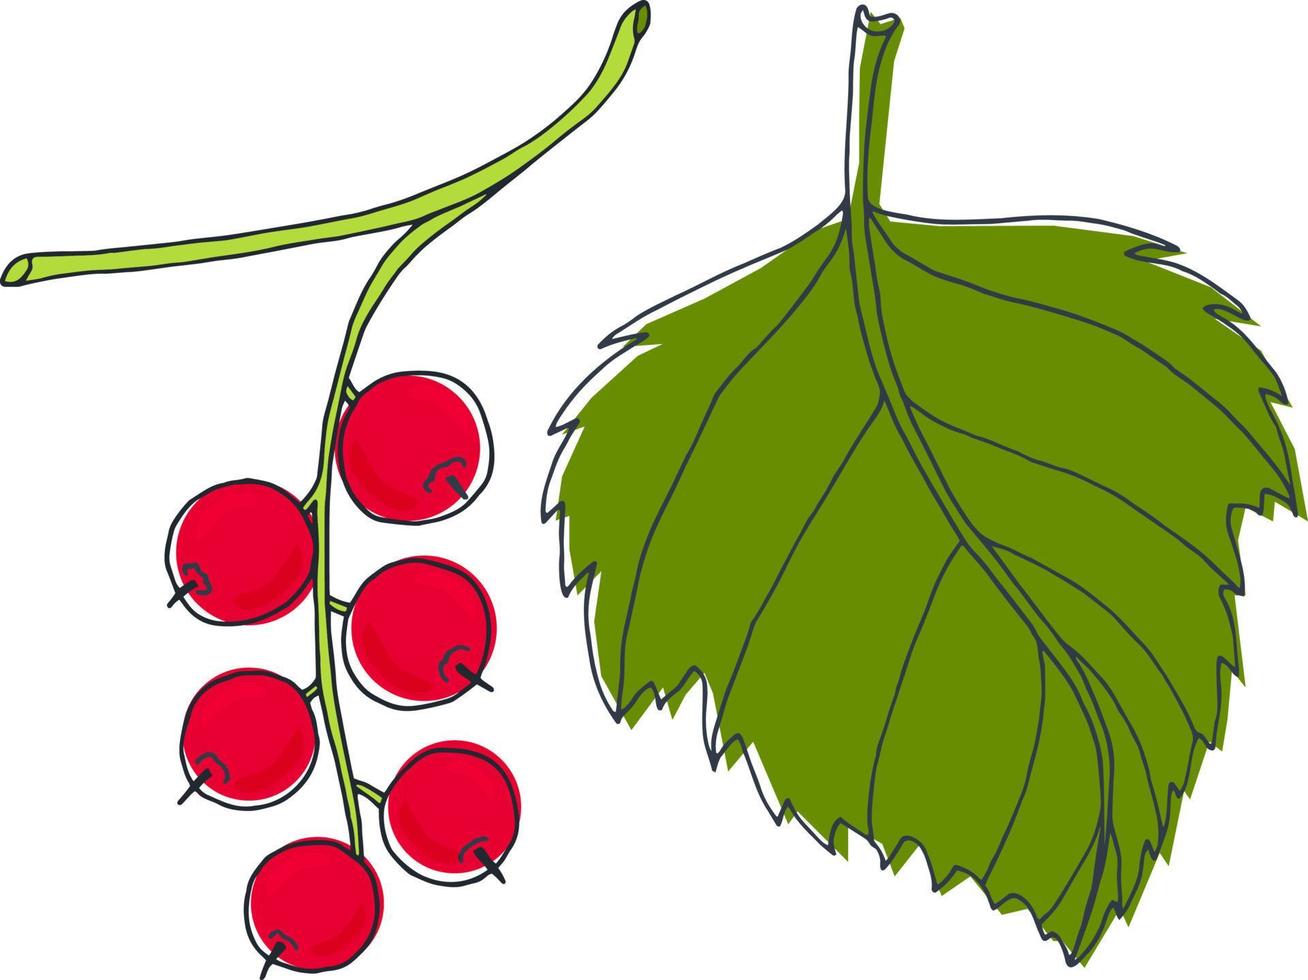 röd vinbär med en blad. vektor bild i de stil av en klotter.